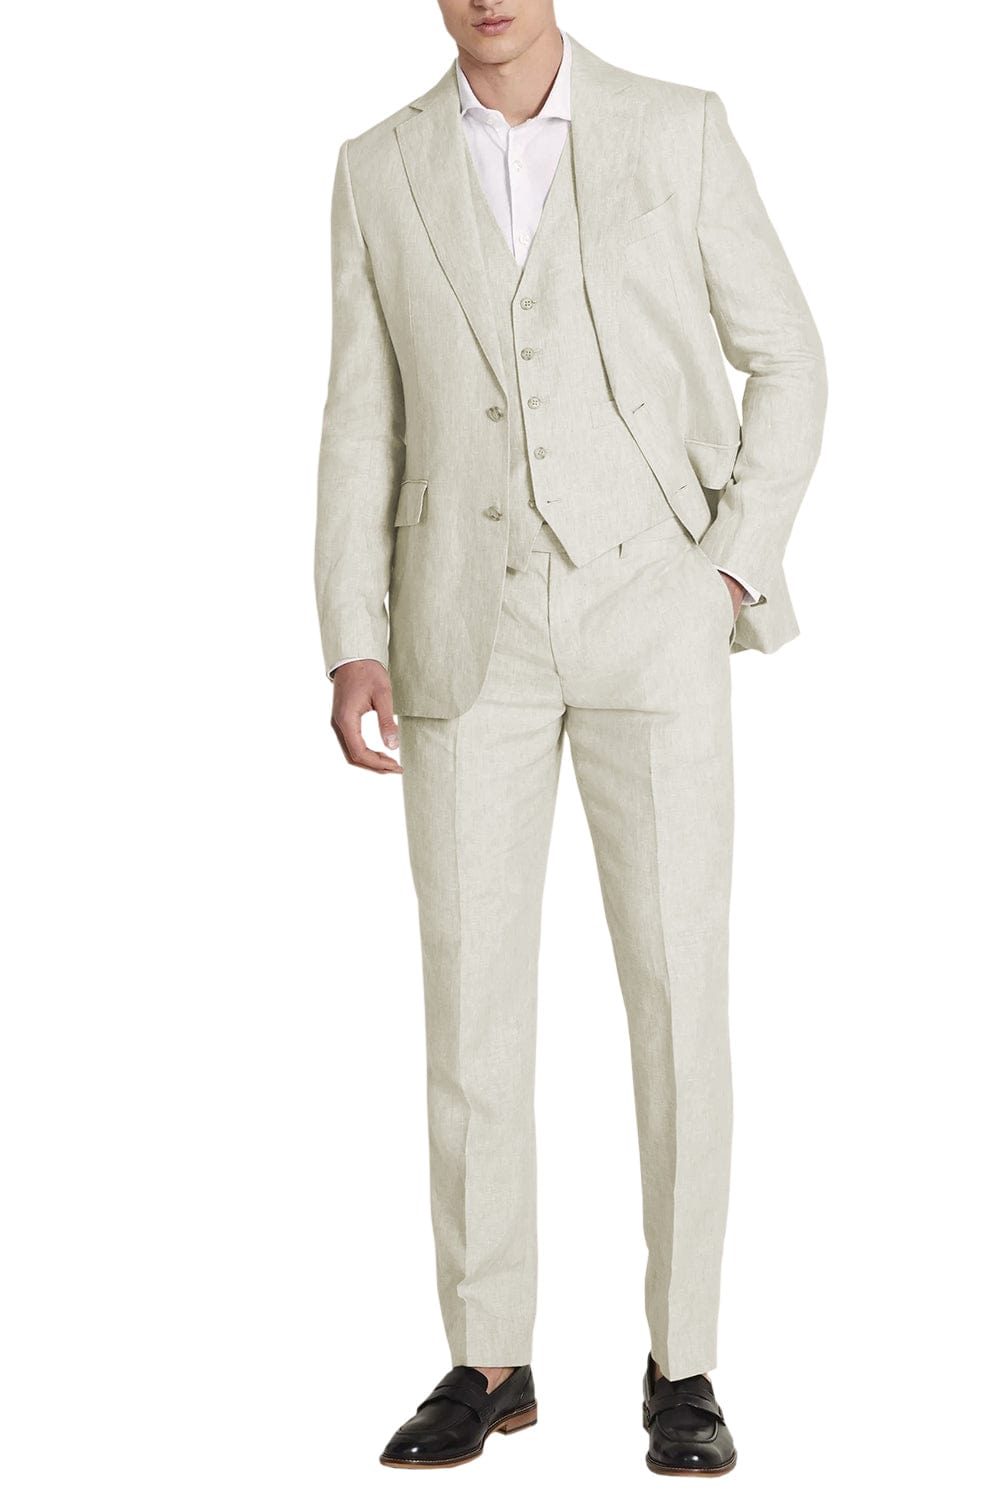 aesido Business Casual 3 Piece Notch Lapel Men's Suit (Blazer+Vest+Pants)